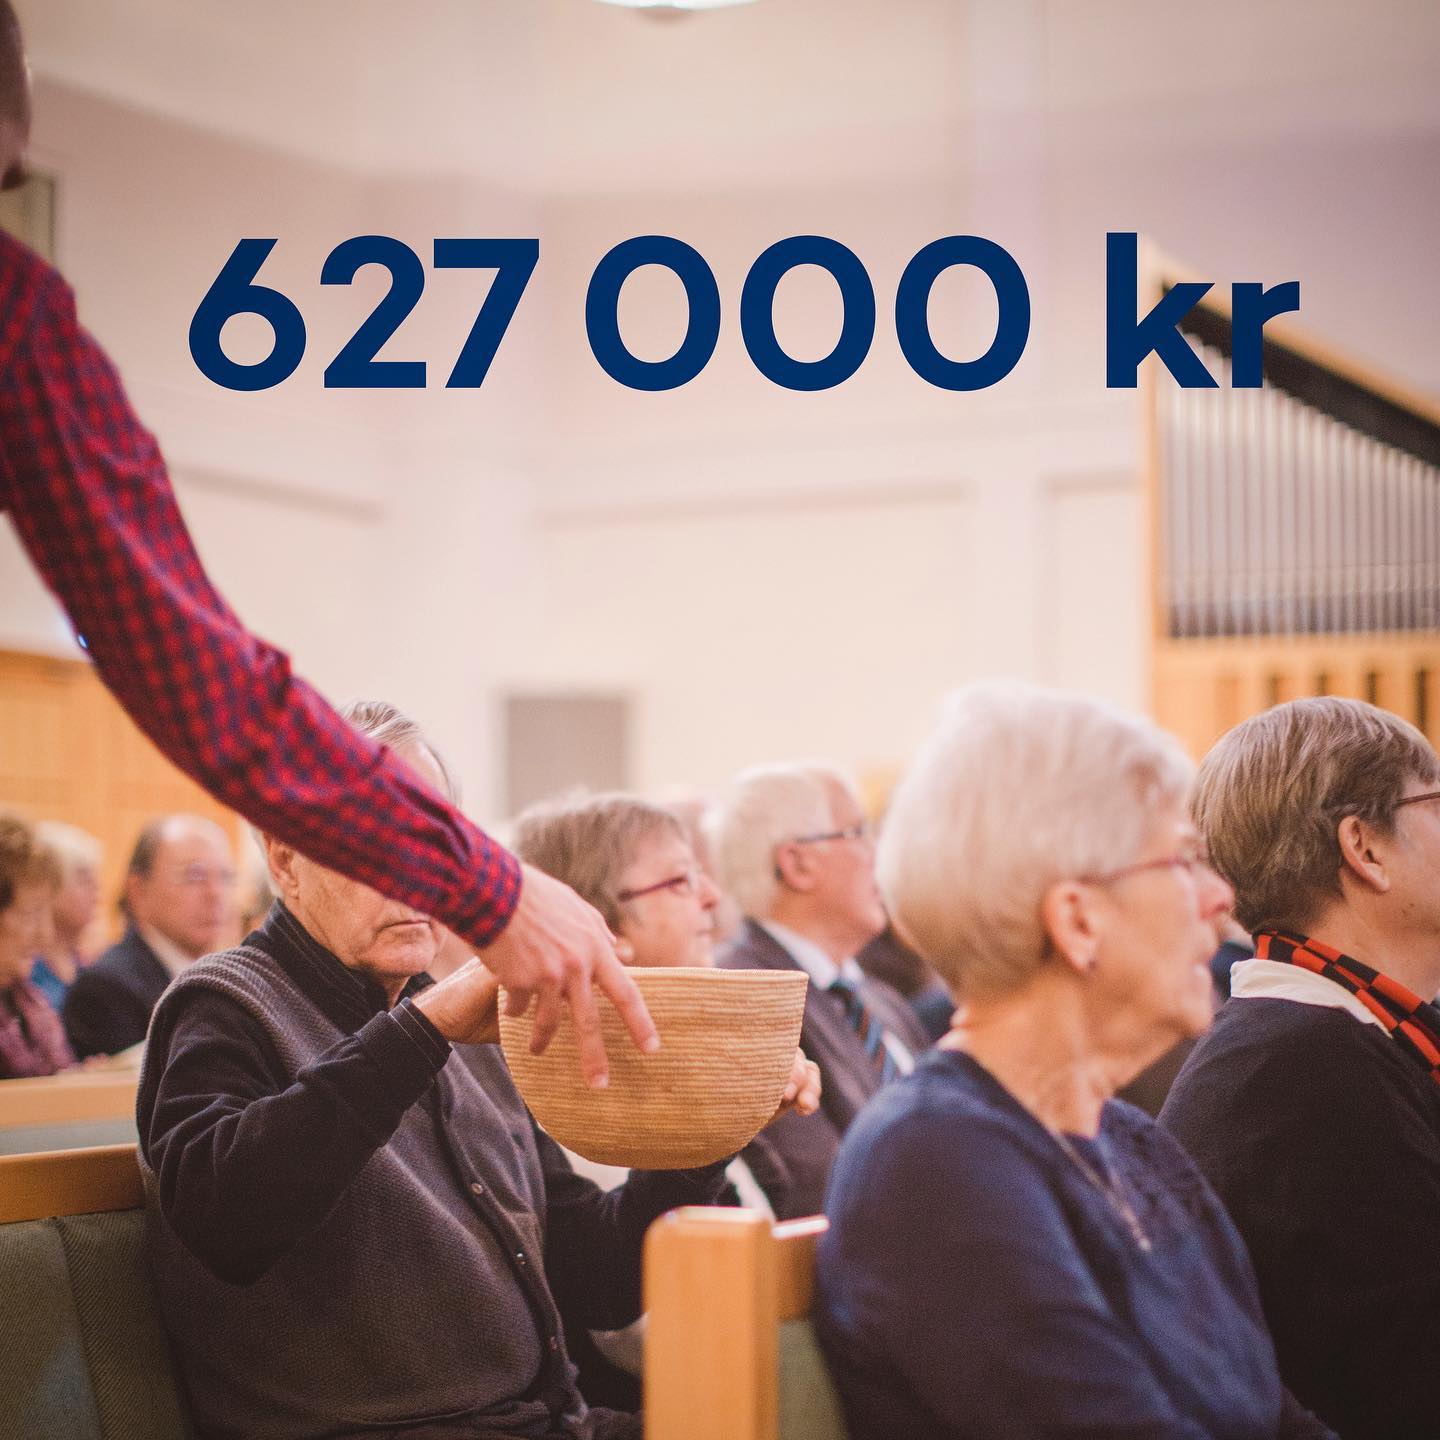 627 000 kr!

Så mycket samlades in i Svenska kyrkan, under rikskollekten till EFS i maj.
Stort tack till alla er som bidragit till EFS mission!

EFS ❤️ Svenska kyrkan